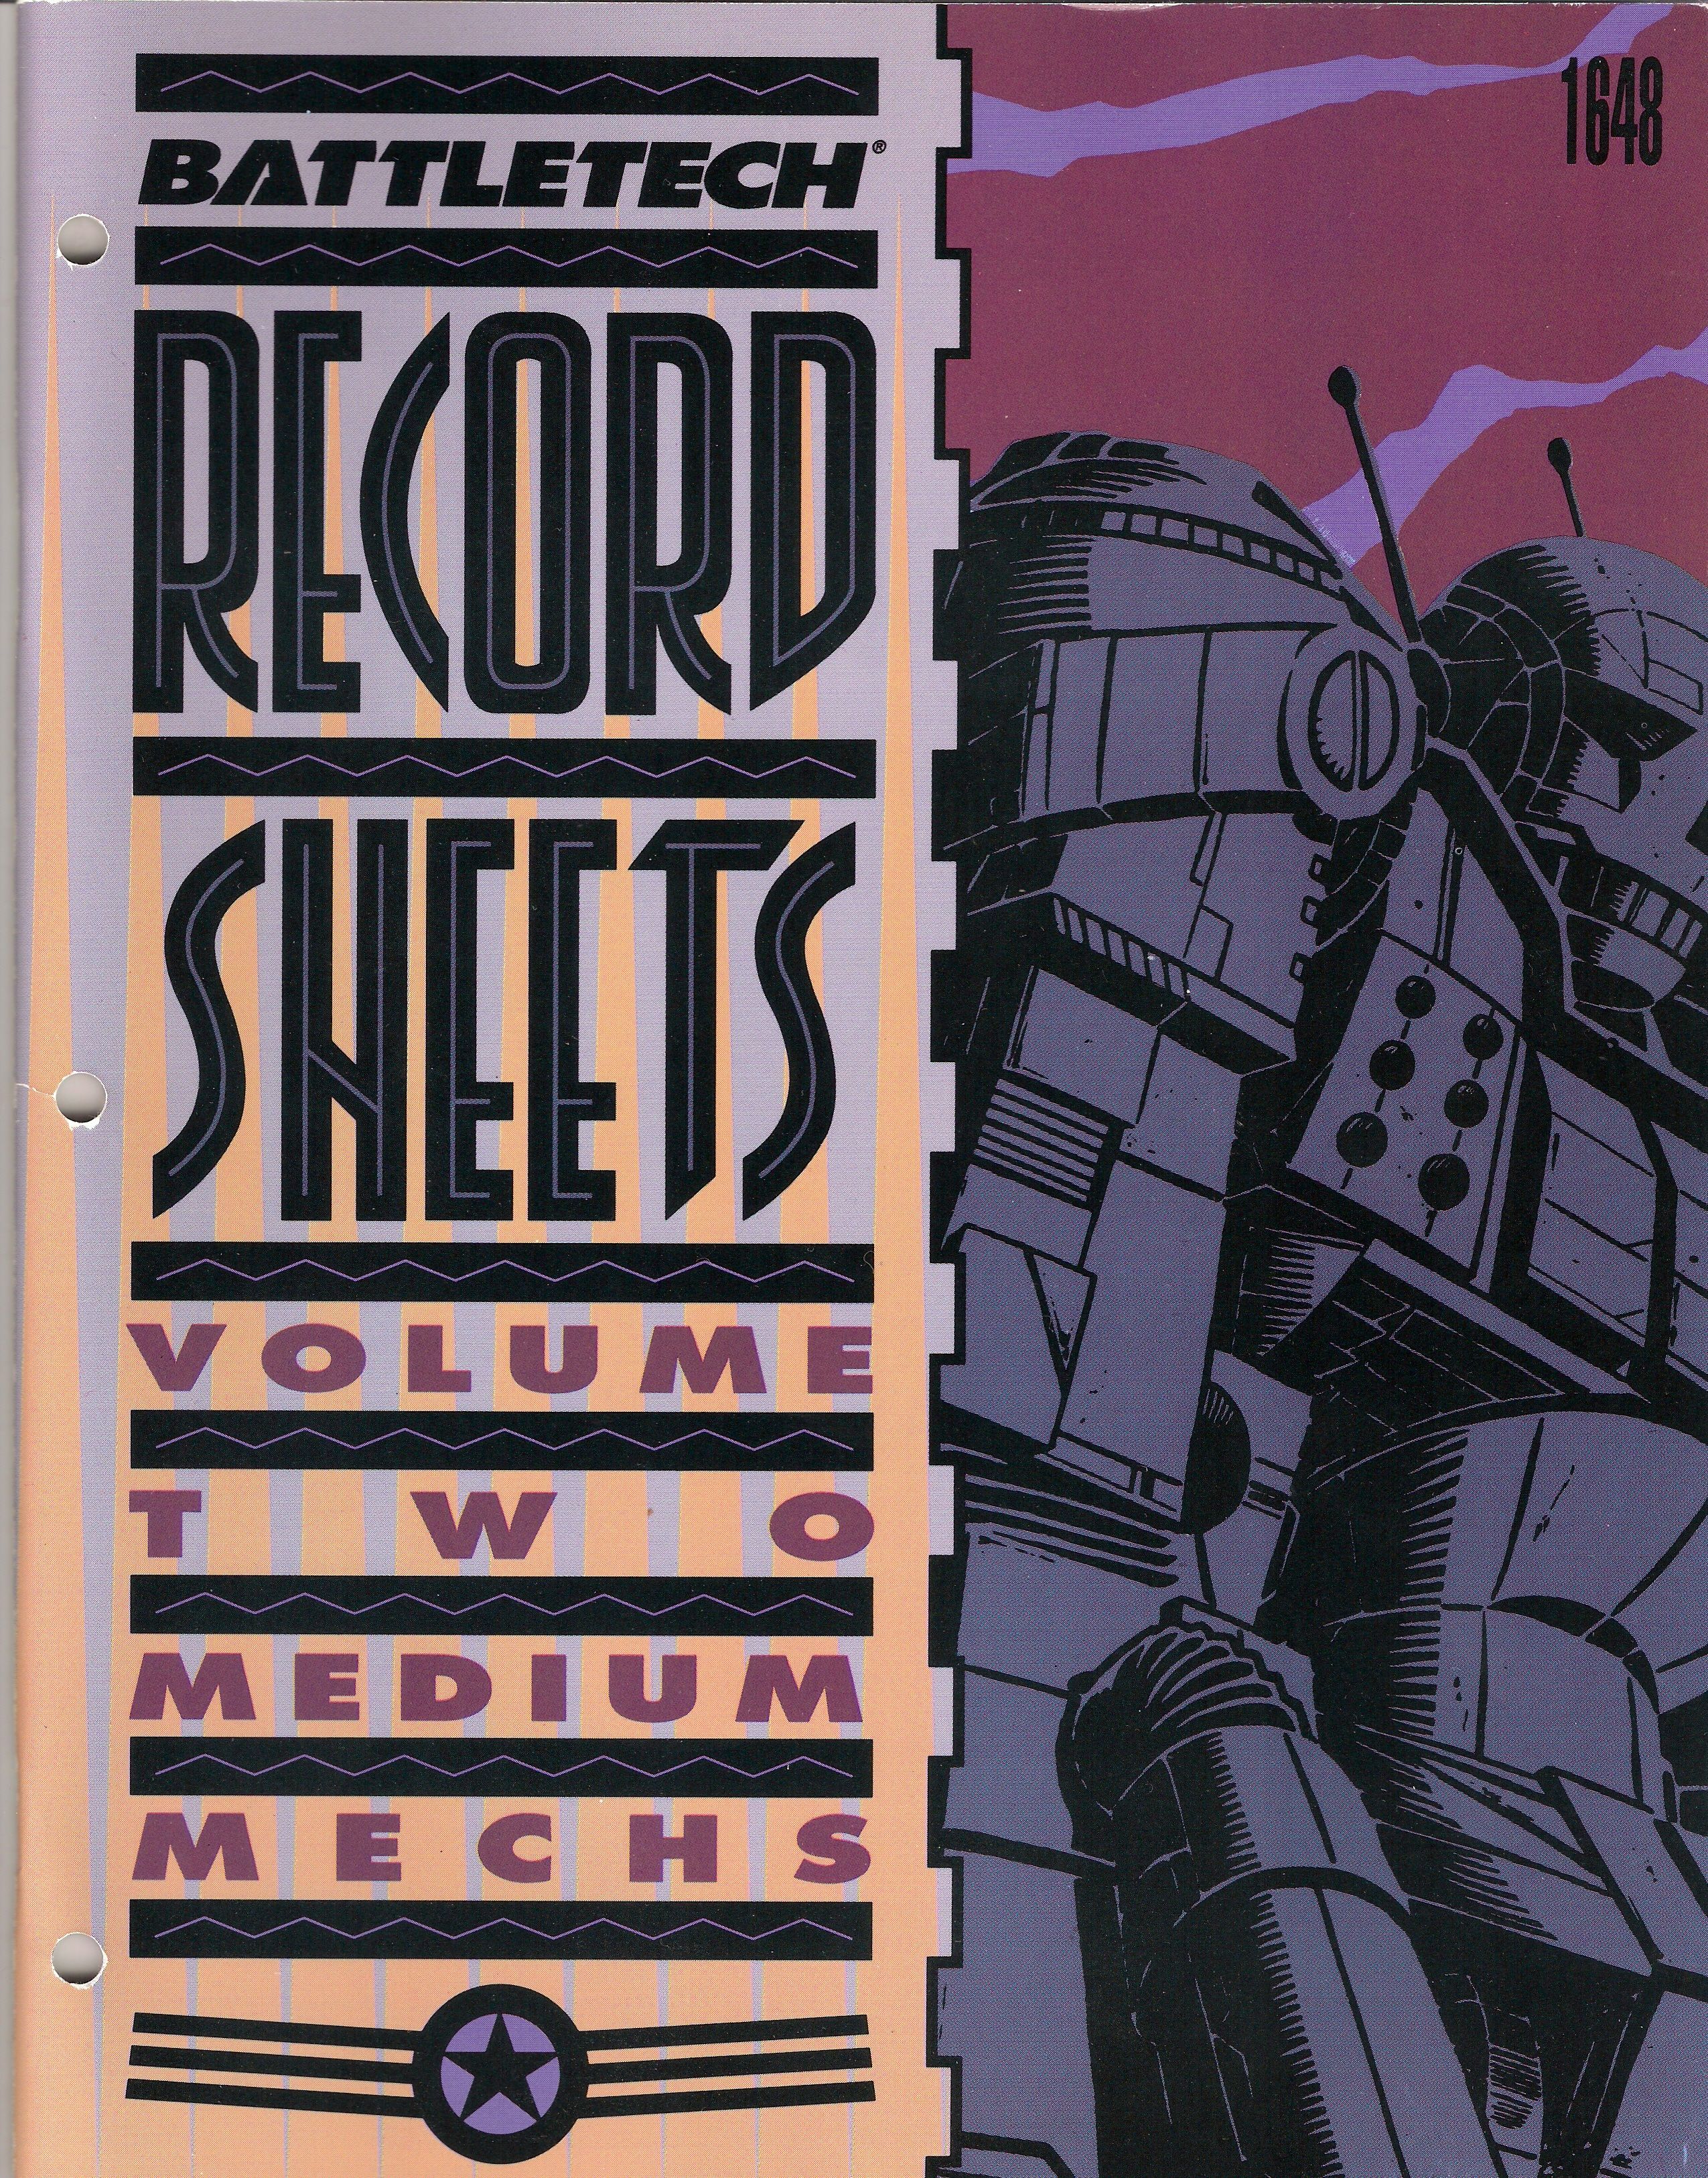 BattleTech Record Sheets Volume Two: Medium 'Mechs